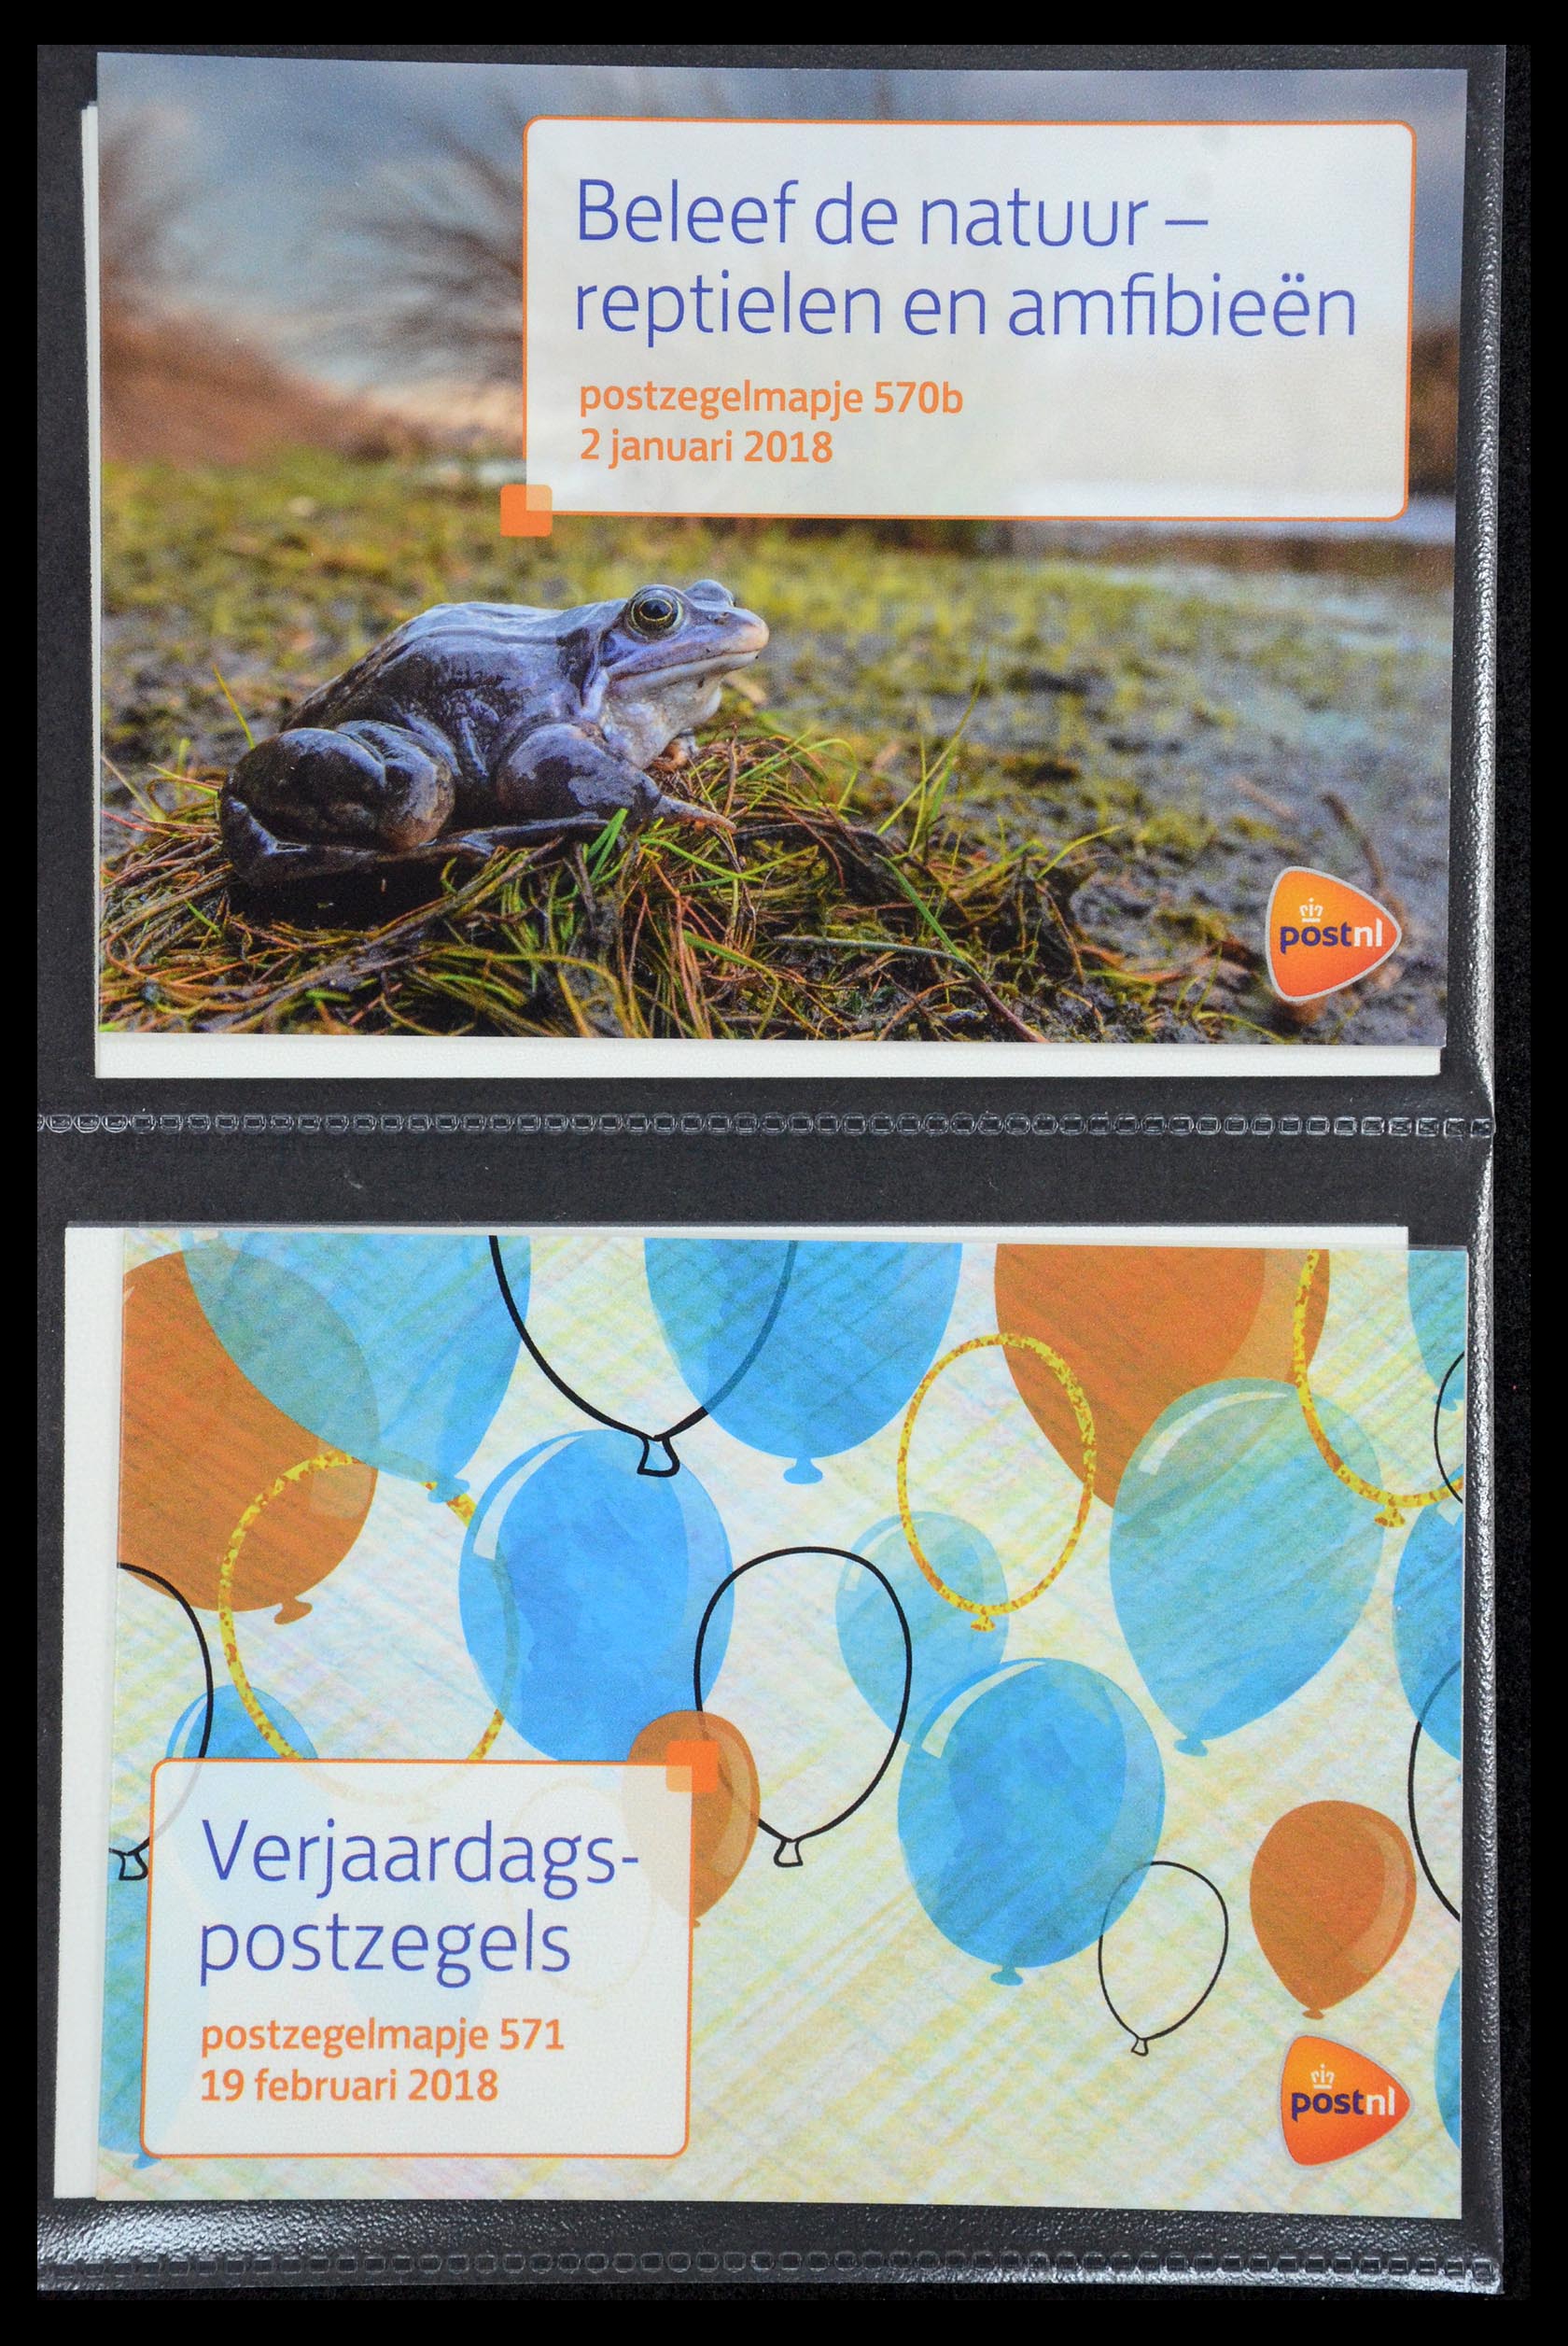 35187 343 - Stamp Collection 35187 Netherlands PTT presentation packs 1982-2019!